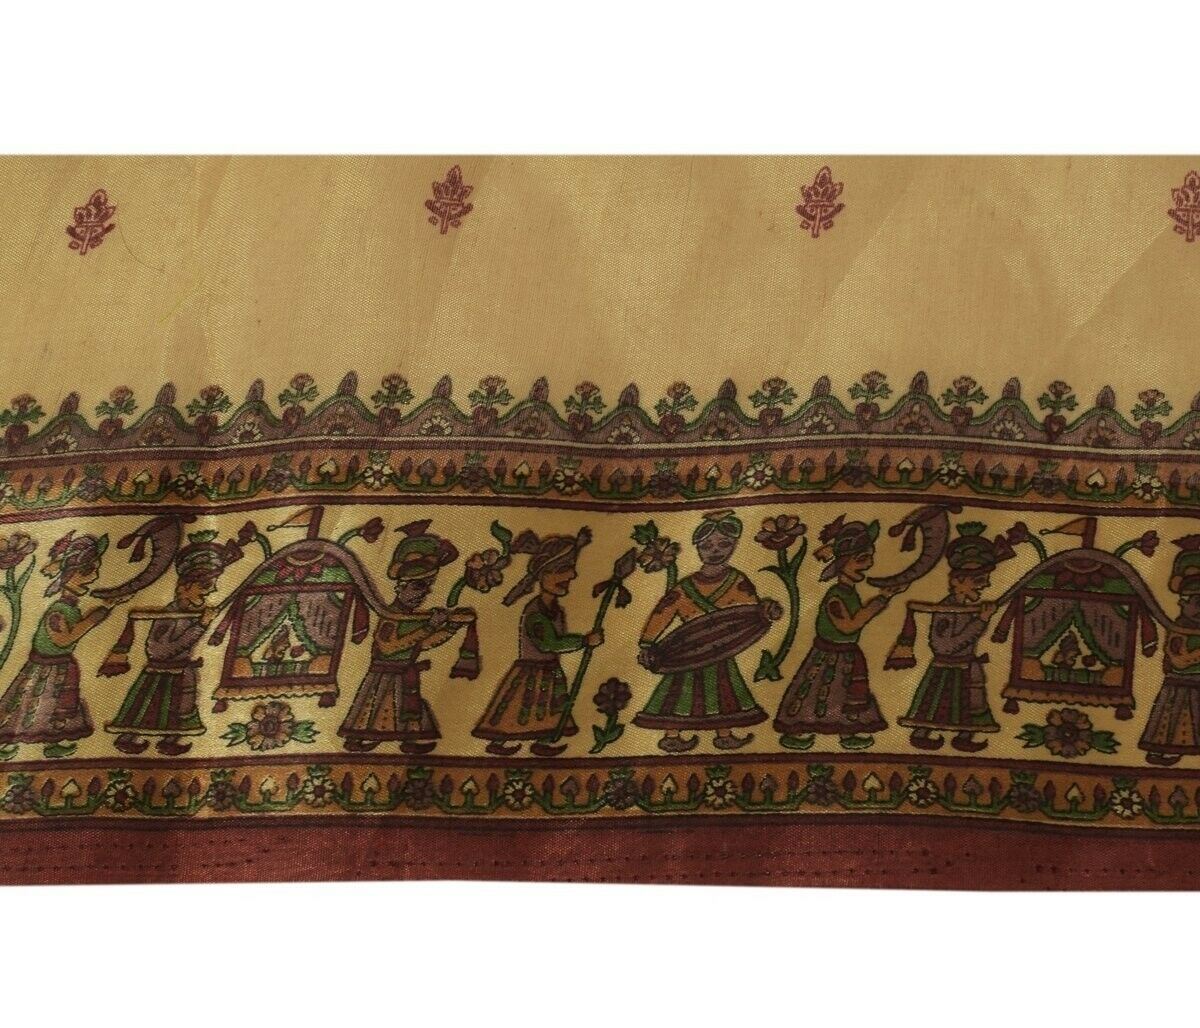 3.5" W Vintage Sari Border Craft Trim Printed Indian Wedding Sewing Ribbon Lace